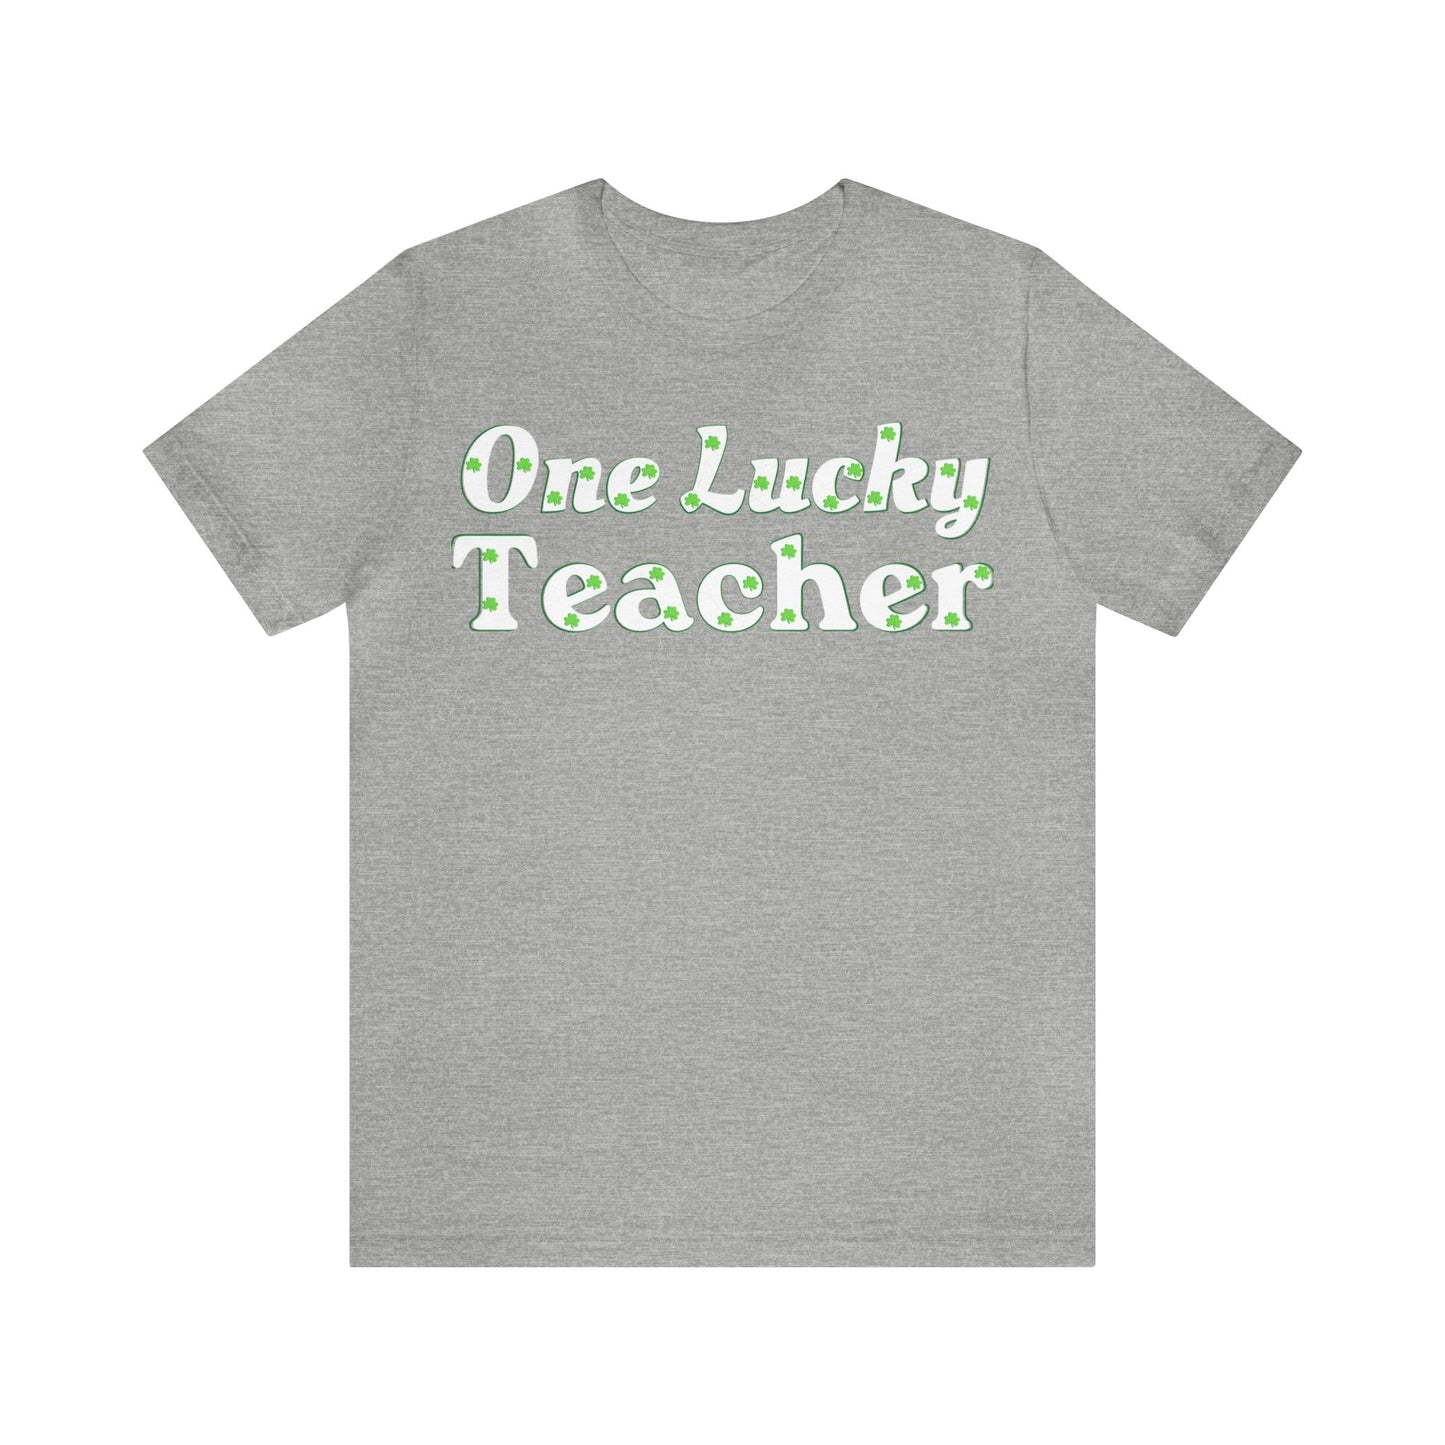 One Lucky Teacher Shirt St Patrick's Day shirt